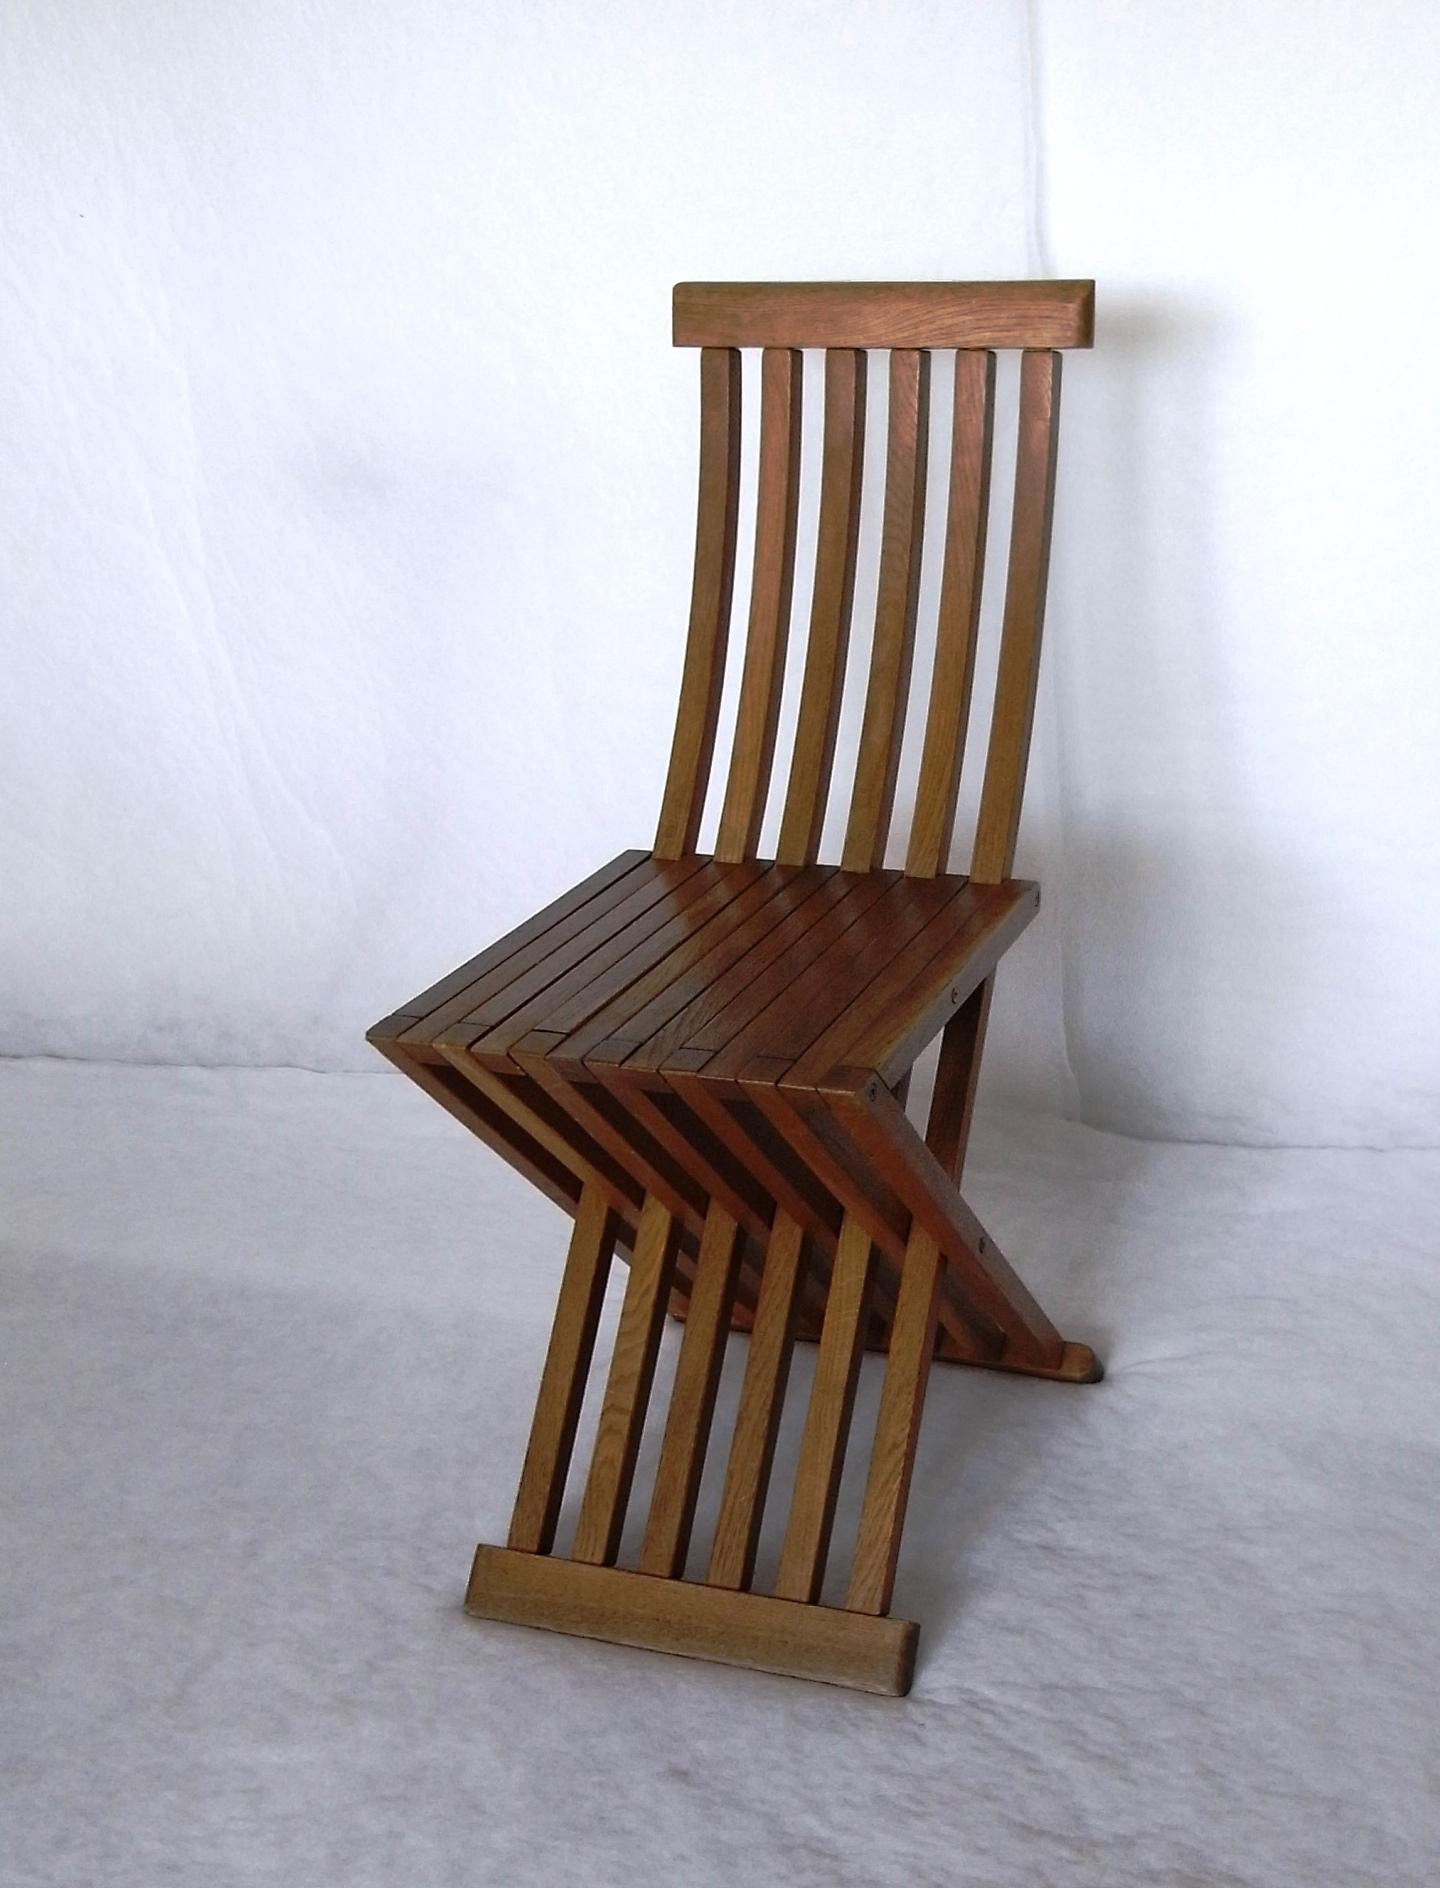 La sedia Tomasa disegnata da Anonimo in omaggio a Paolo Uccello è una sedia pieghevole con schienale e seduta in listelli di rovere massello curvato, con finitura a cera. Gli elementi sono collegati tramite barre e inserti terminali filettati in